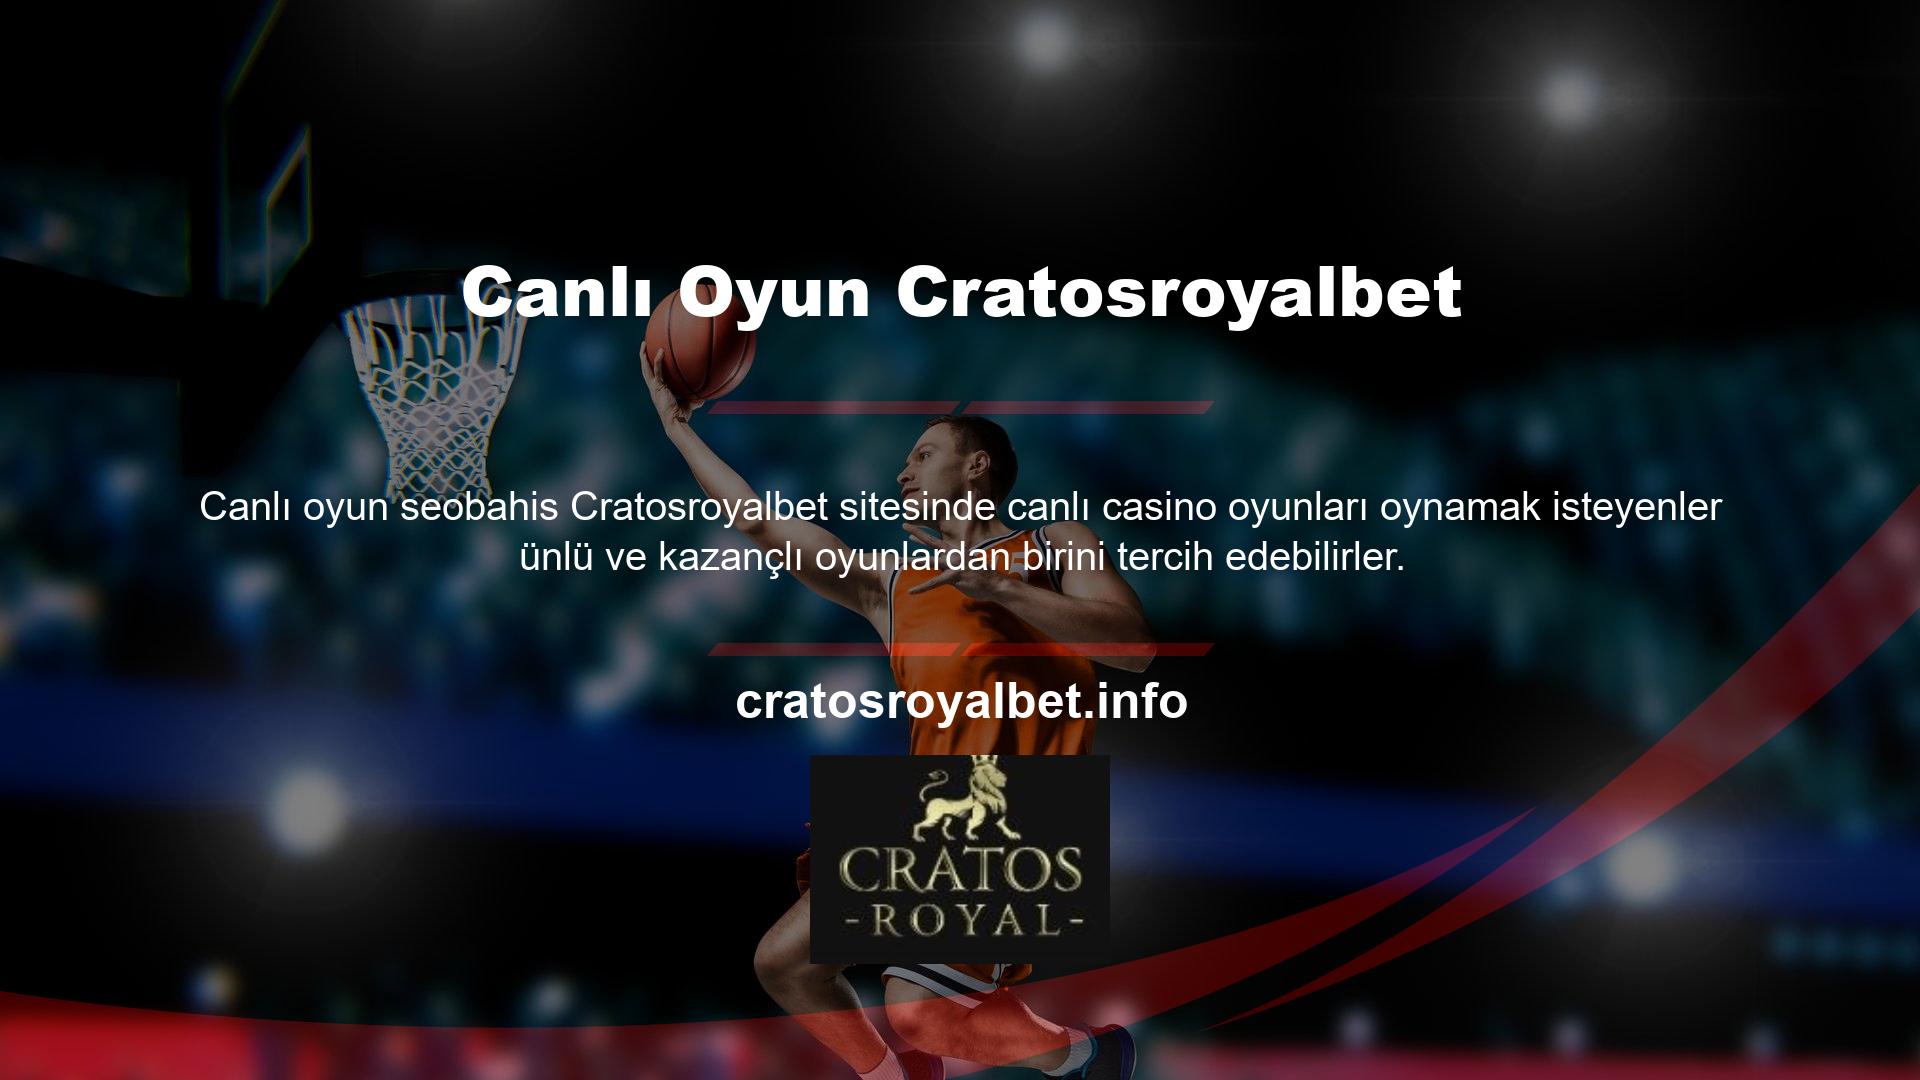 Cratosroyalbet girişinizi yenilemek, Türk üyelerin bilgisayarlarında veya mobil cihazlarında canlı oyunlar oynamasına izin verecektir